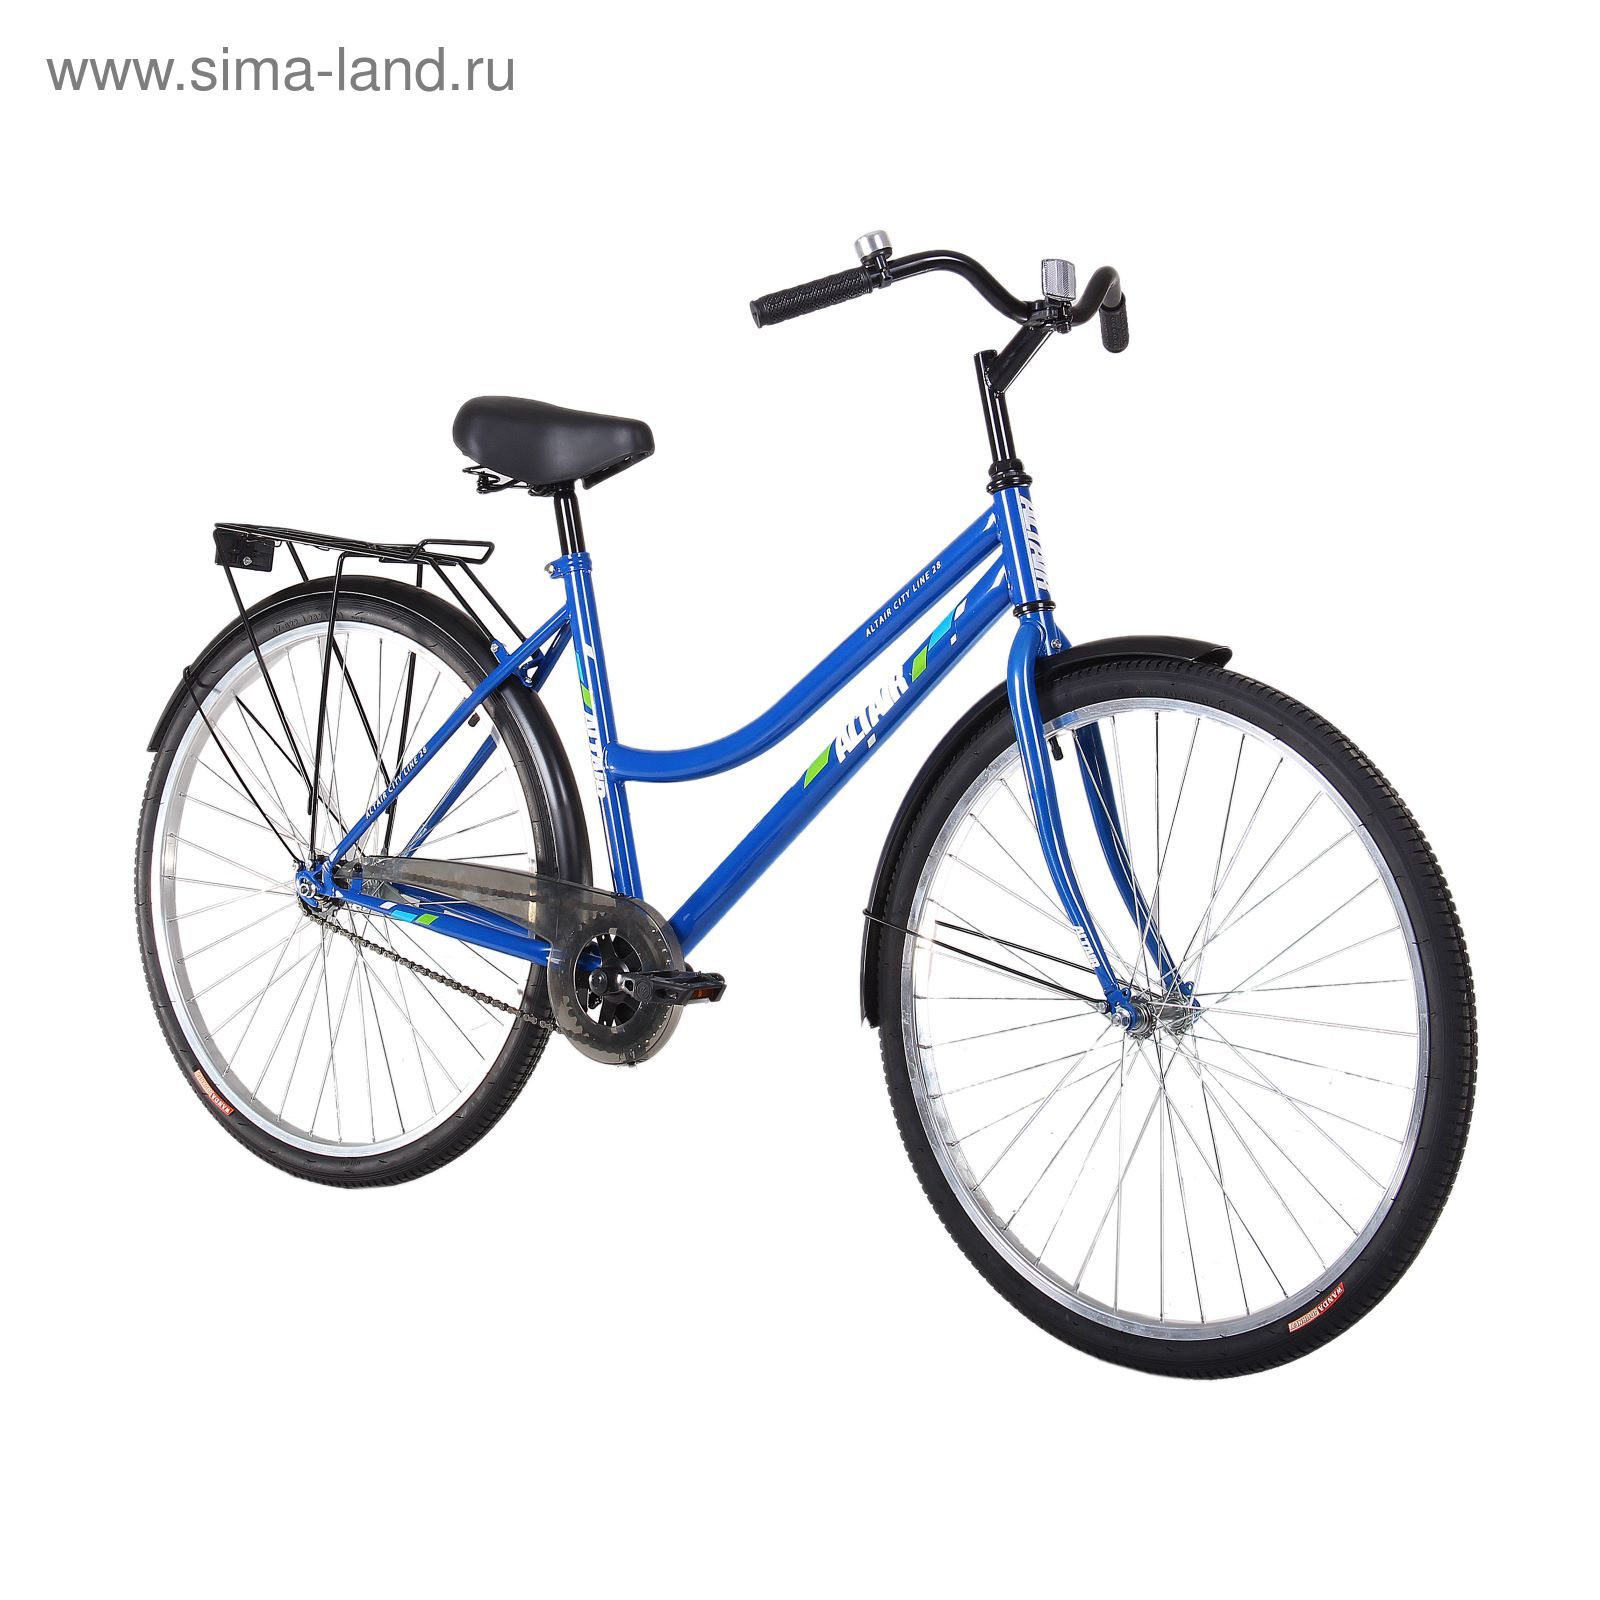 Велосипед 28" Altair City Low 28, 2017, цвет синий, размер 19"